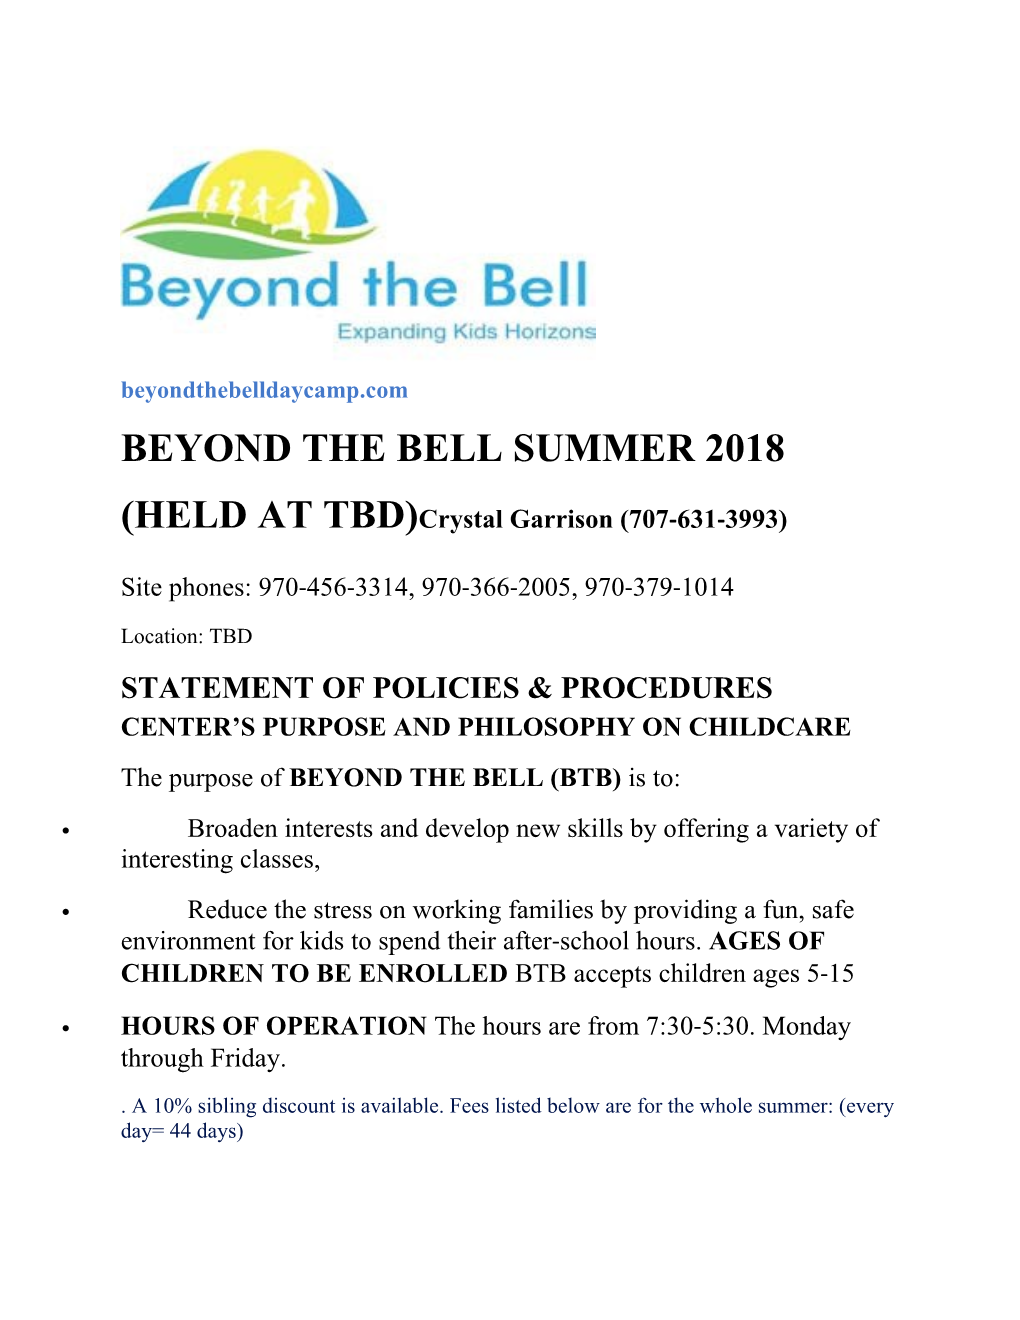 Beyond the Bell Summer 2018